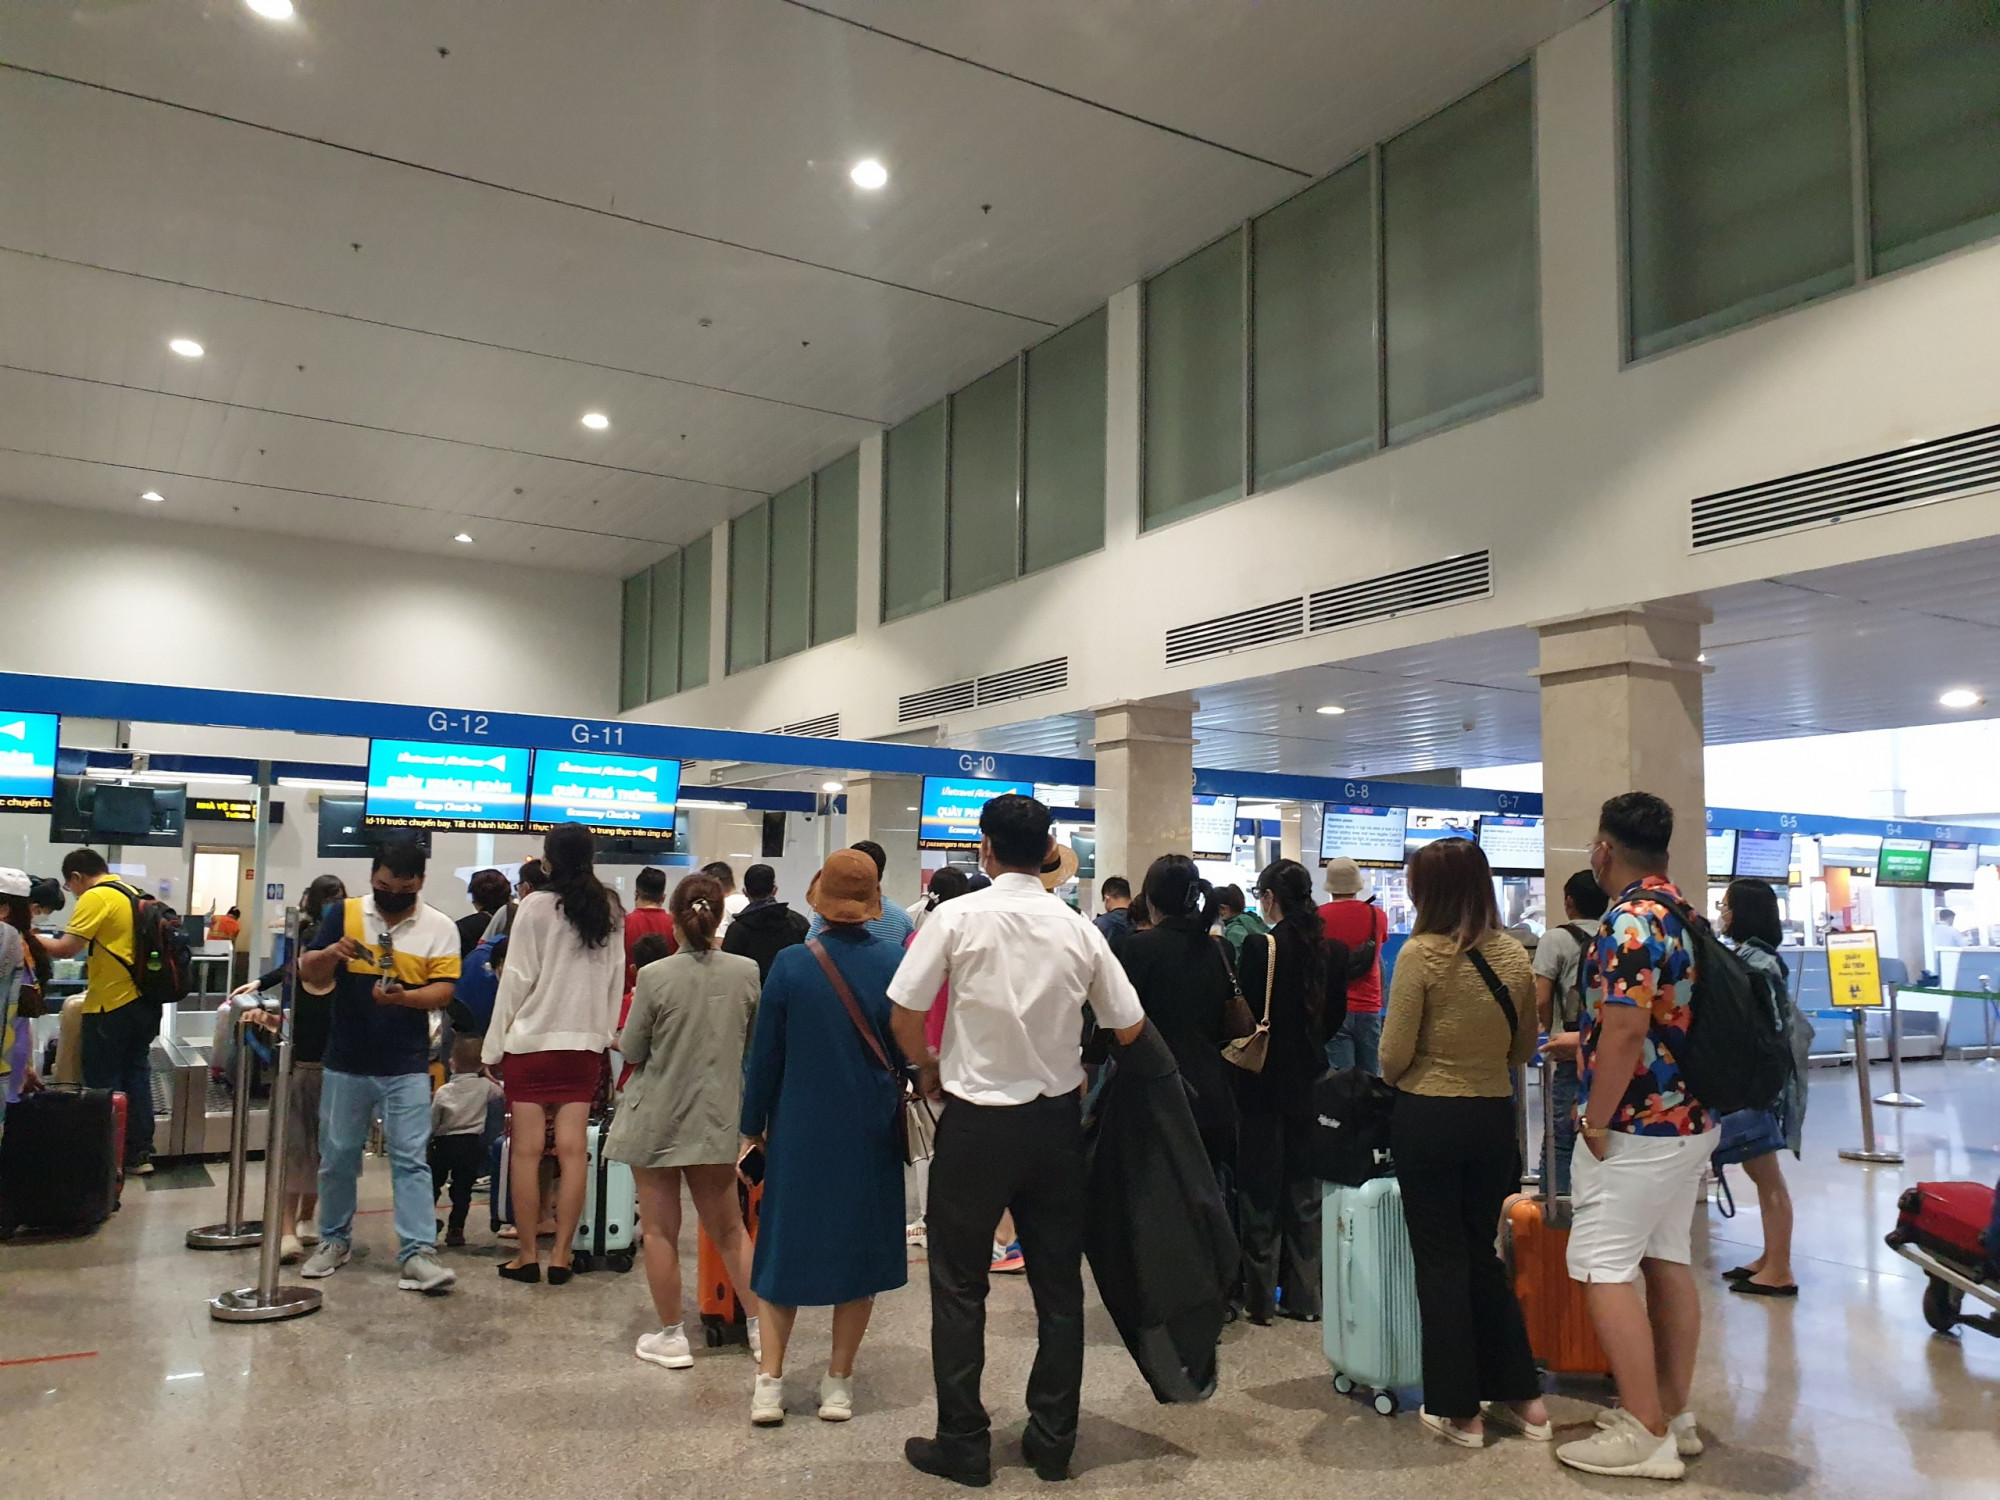 Theo quan sát, trước quầy vé các hãng hàng không luôn đông khách xếp hàng dài để chờ làm thủ tục bay đến các điểm du lịch nổi tiếng như: Đà Nẵng, Quy Nhơn, Nha Trang, Phú Quốc...